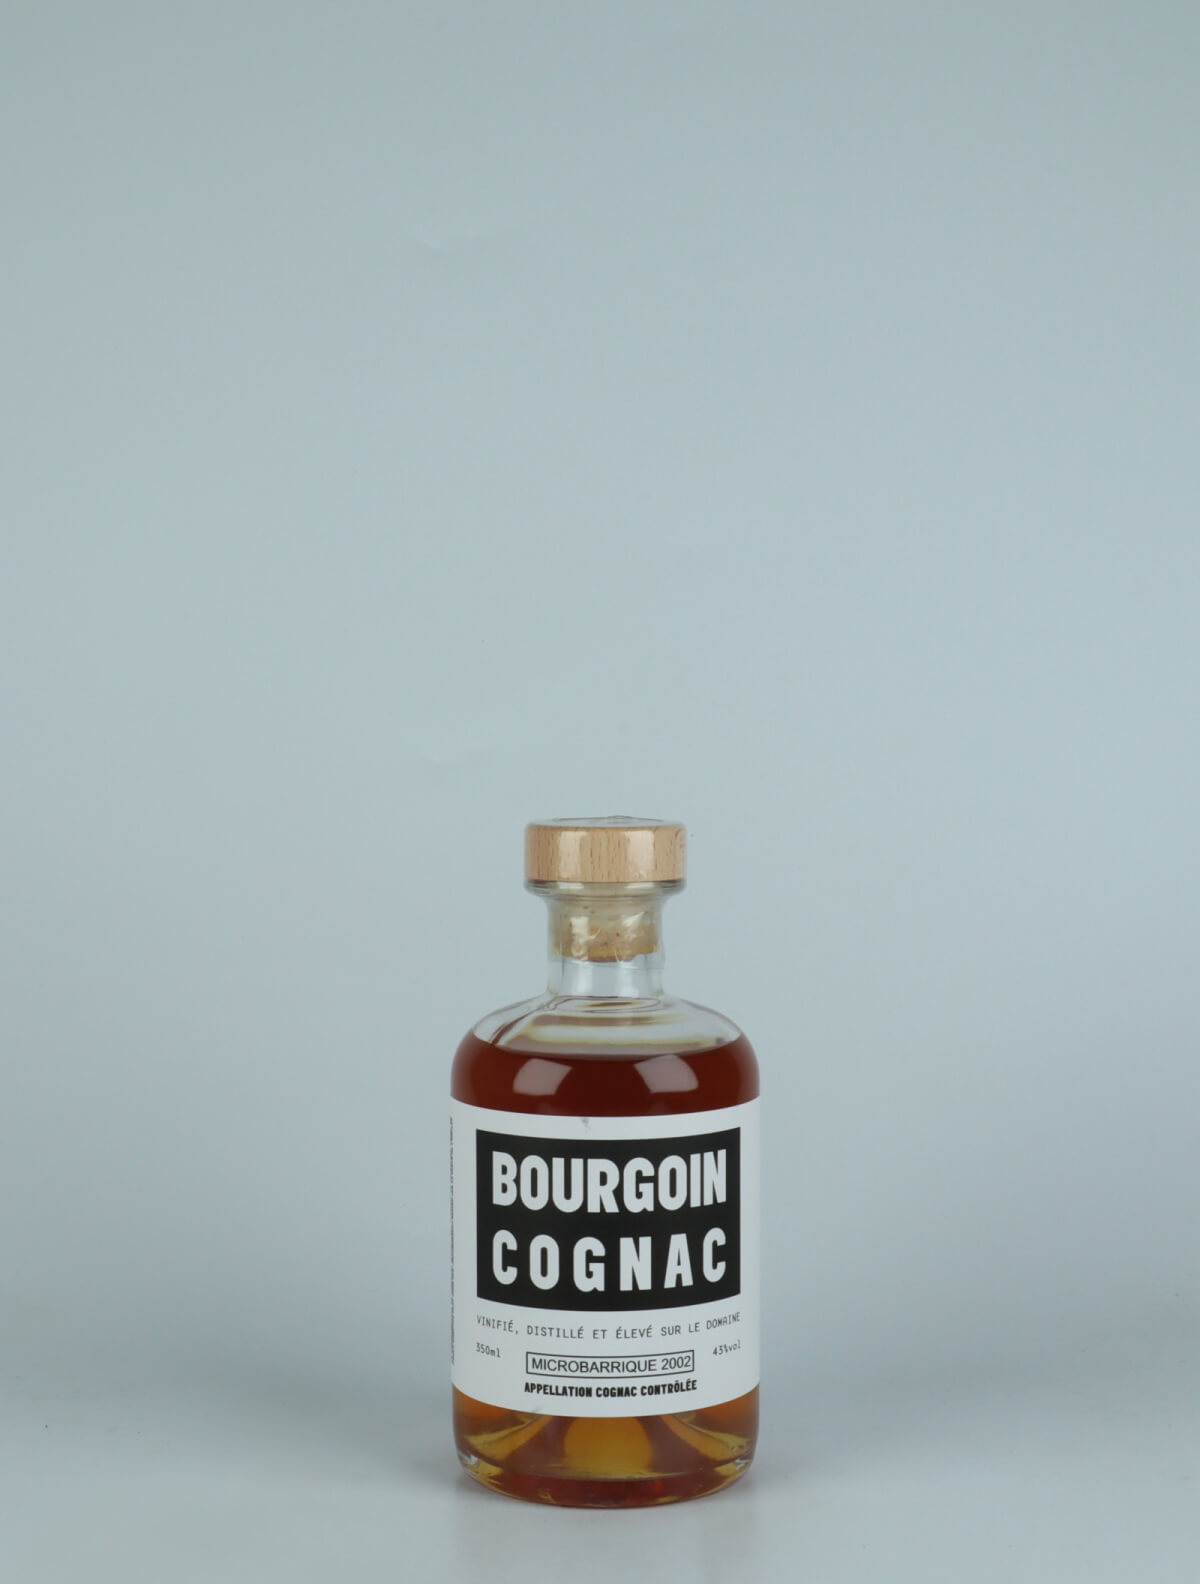 En flaske N.V. Cognac XO - Microbarrique (2002) - 20 Years Old Spiritus fra Bourgoin Cognac, Cognac i Frankrig